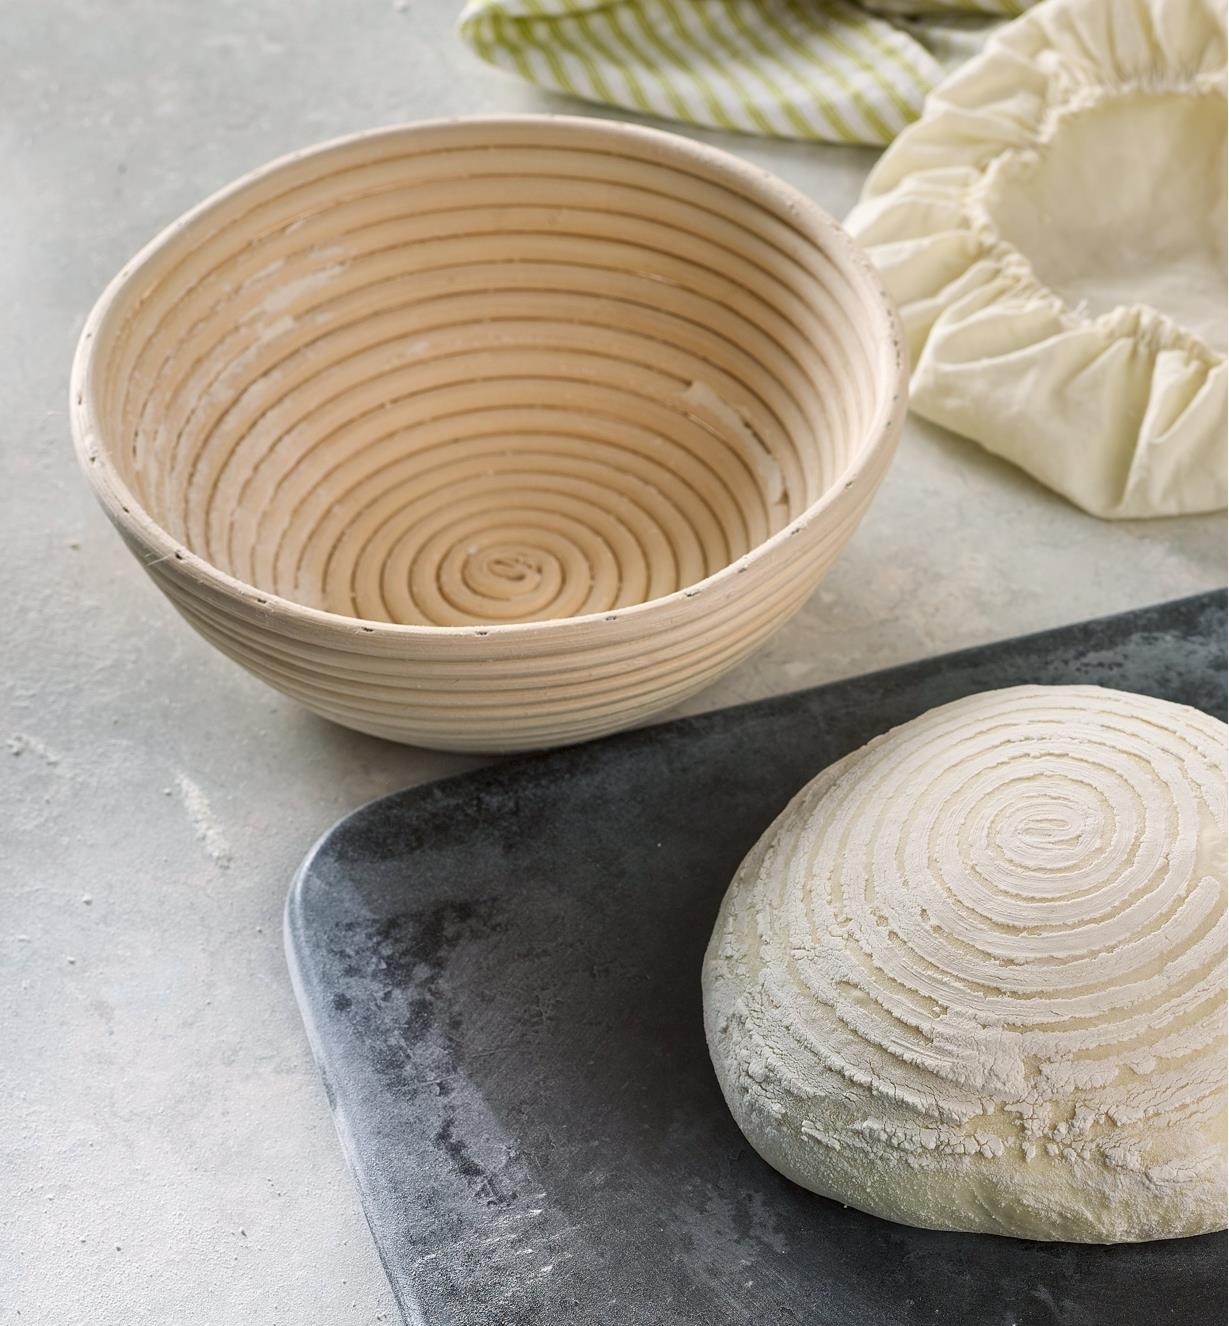 Banneton rond vide à côté d'une boule de pâte à pain présentant un motif spiralé